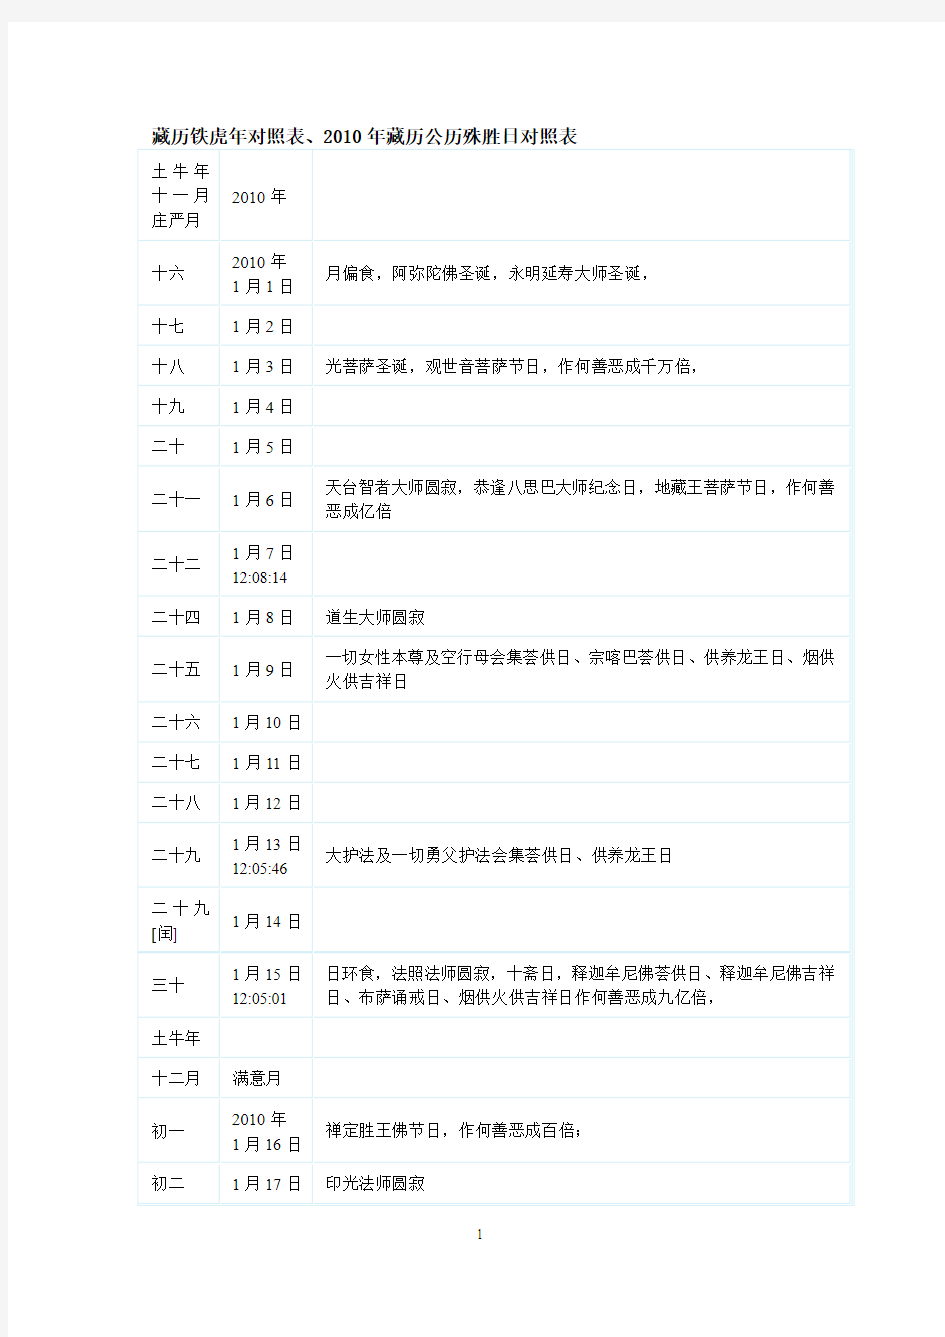 2010年藏历公历殊胜日对照表